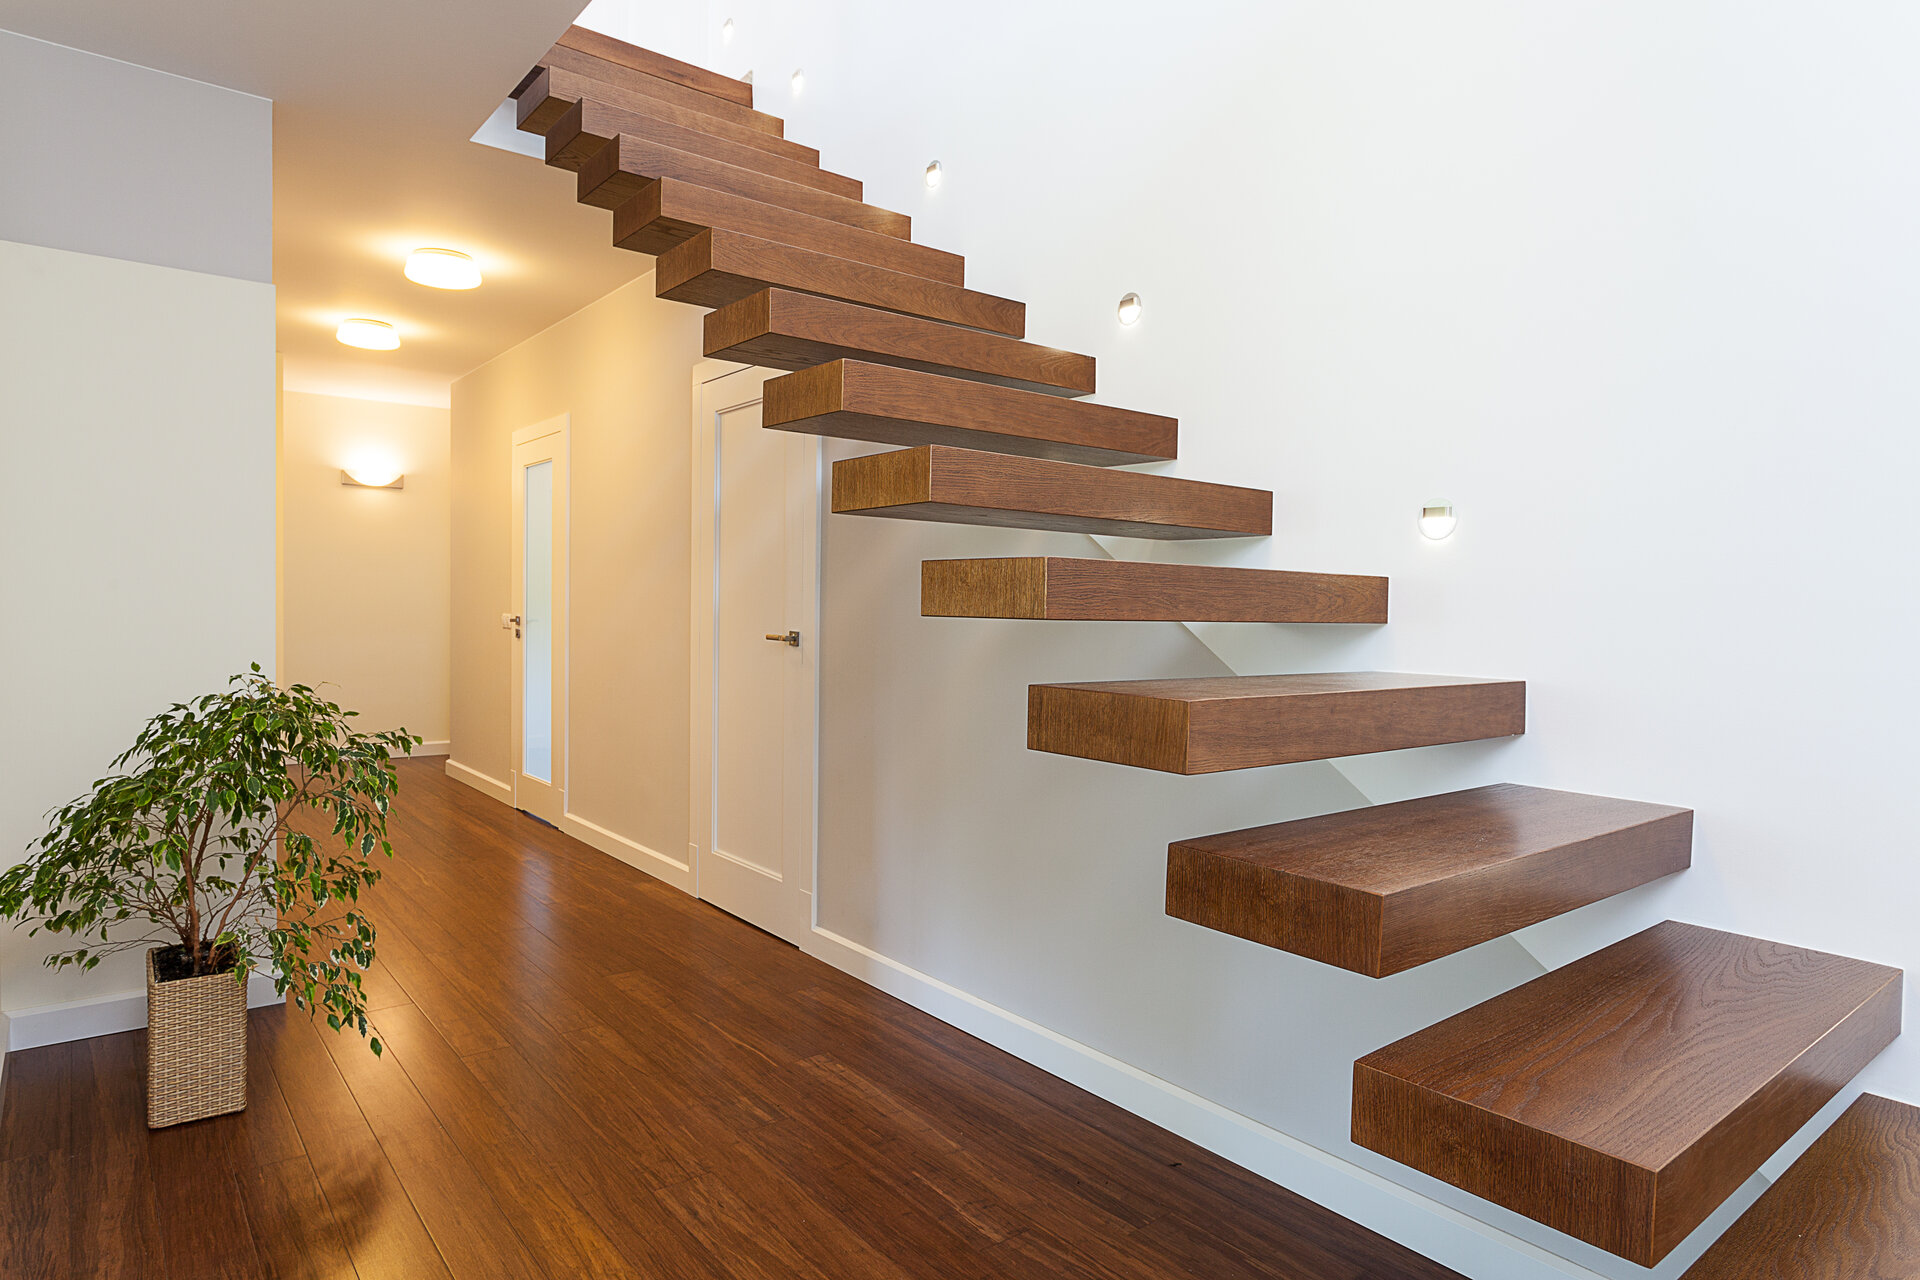 Heller Raum, eine geräumige Wohnung mit moderner Treppe aus Holz